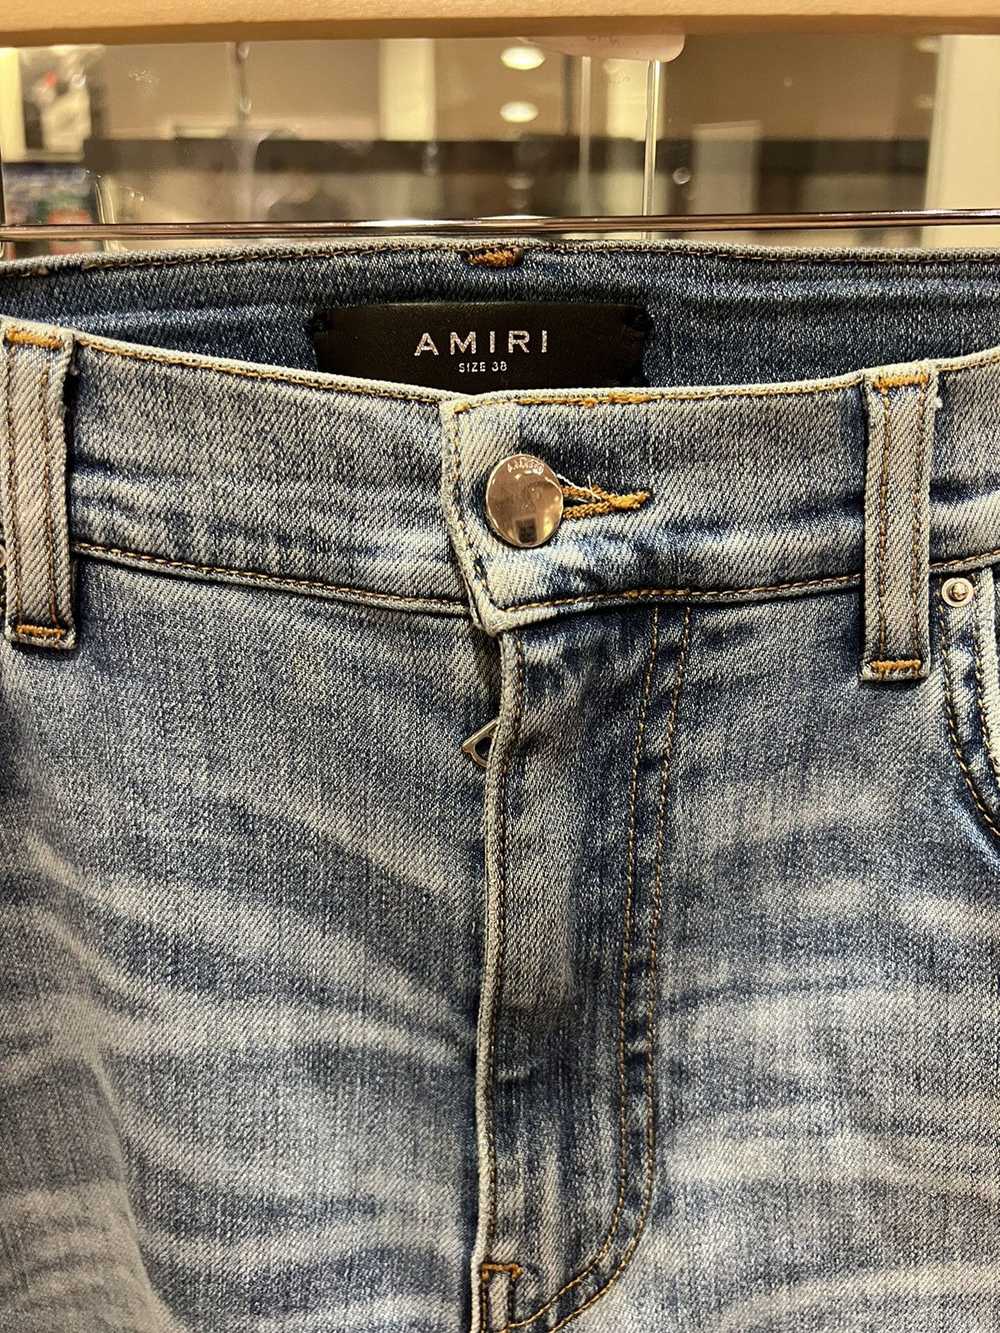 Amiri Amiri mx1 crystal leather jeans - image 3